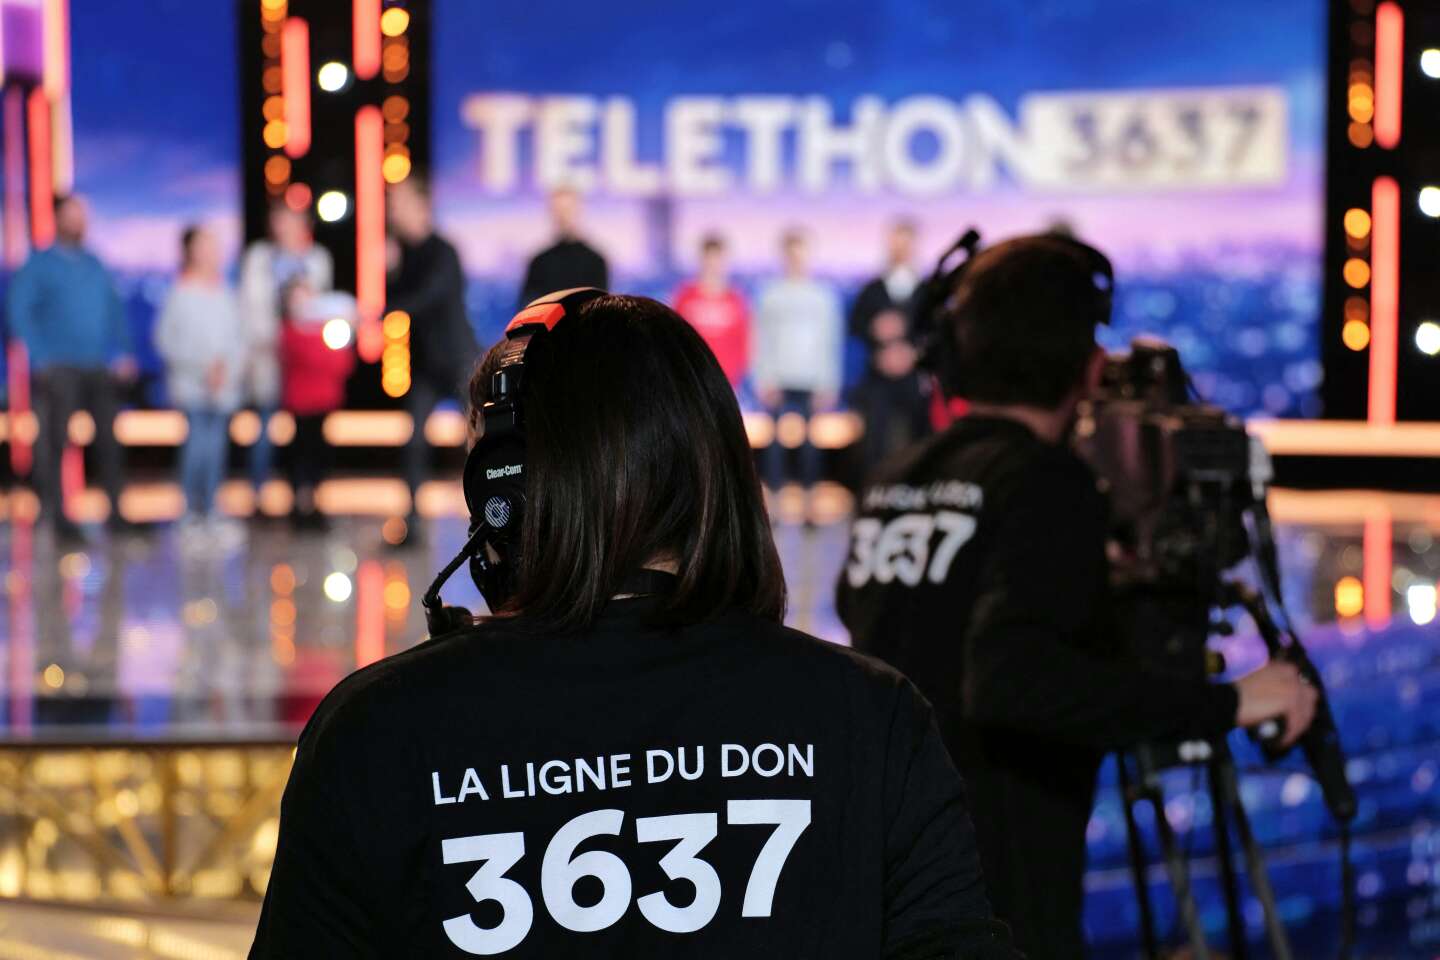 De retour dans son format d'avant-pandémie, le Téléthon 2022 récolte plus de 78 millions d'euros - Le Monde